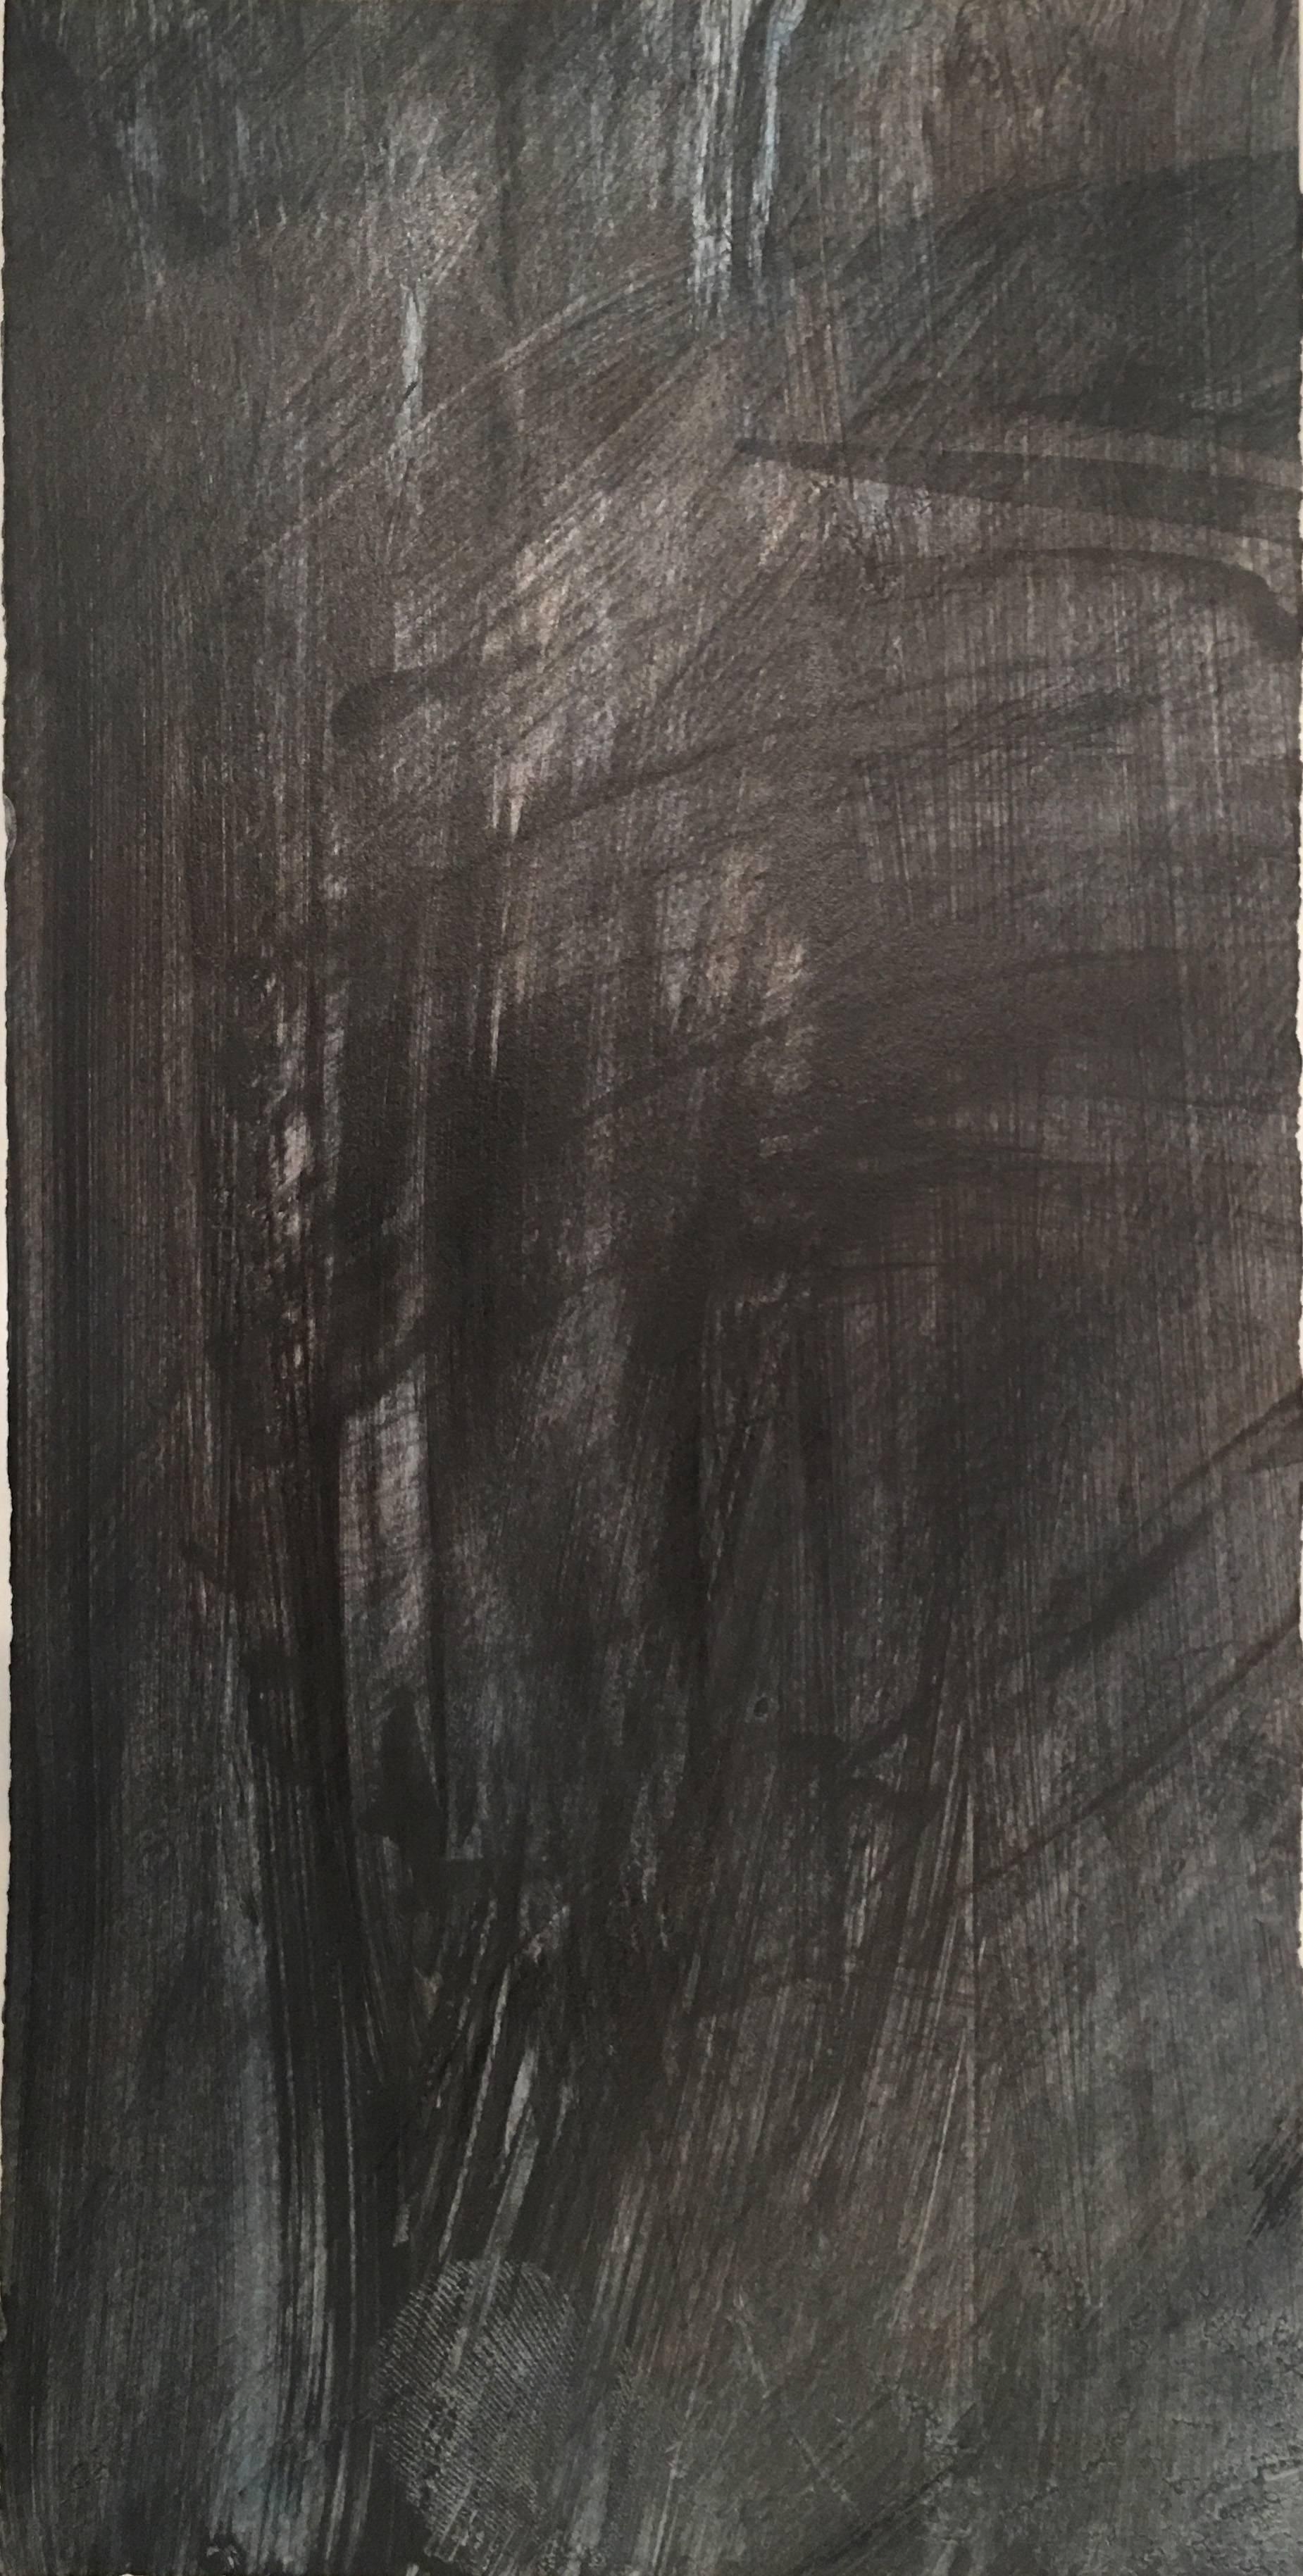 Deborah Freedman, Given Melody 15, 2016, Peinture à l'huile sur papier